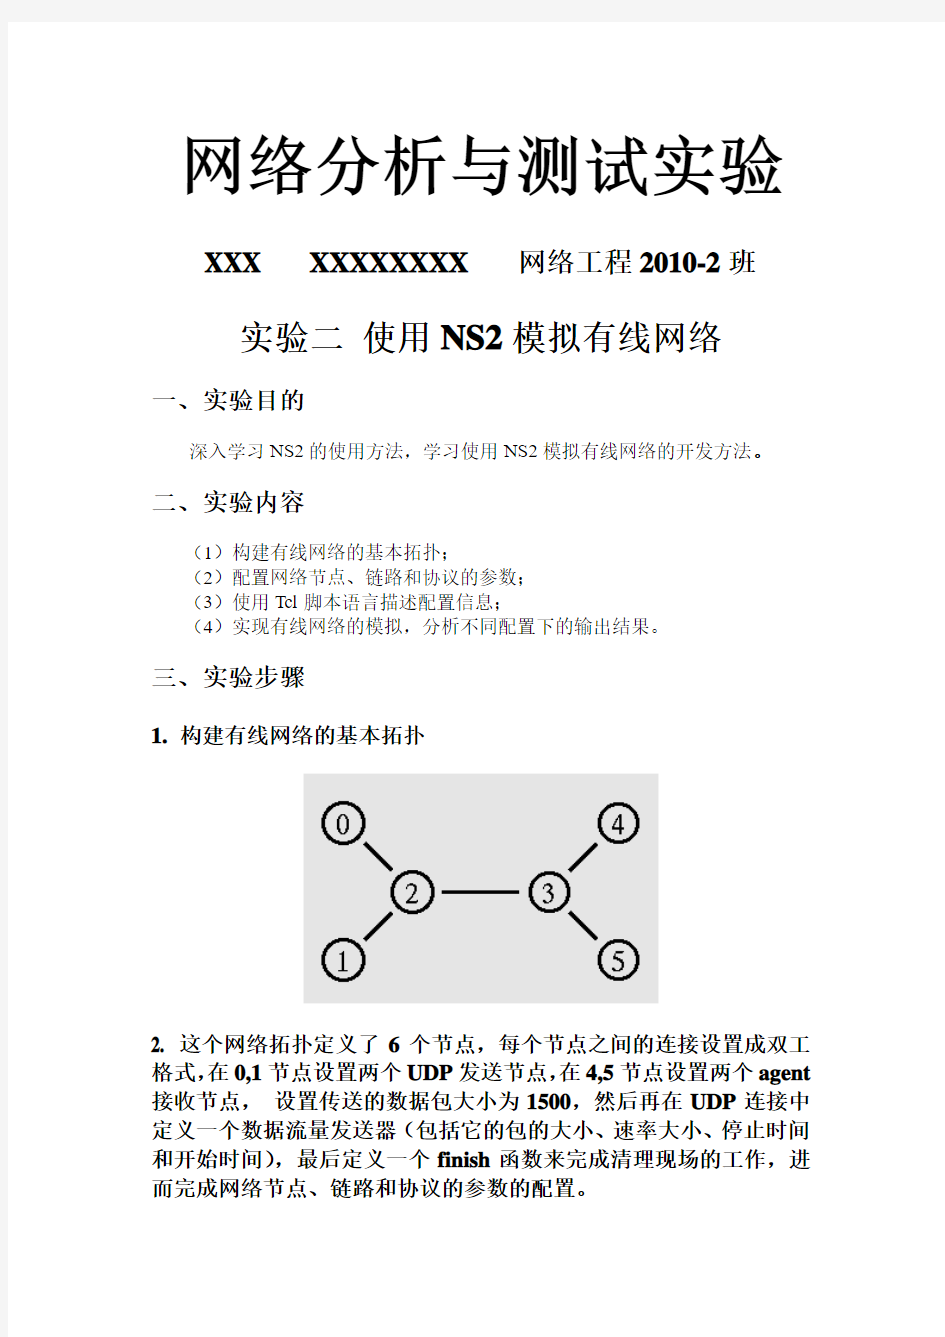 网络分析与测试实验2_使用NS2模拟有线网络